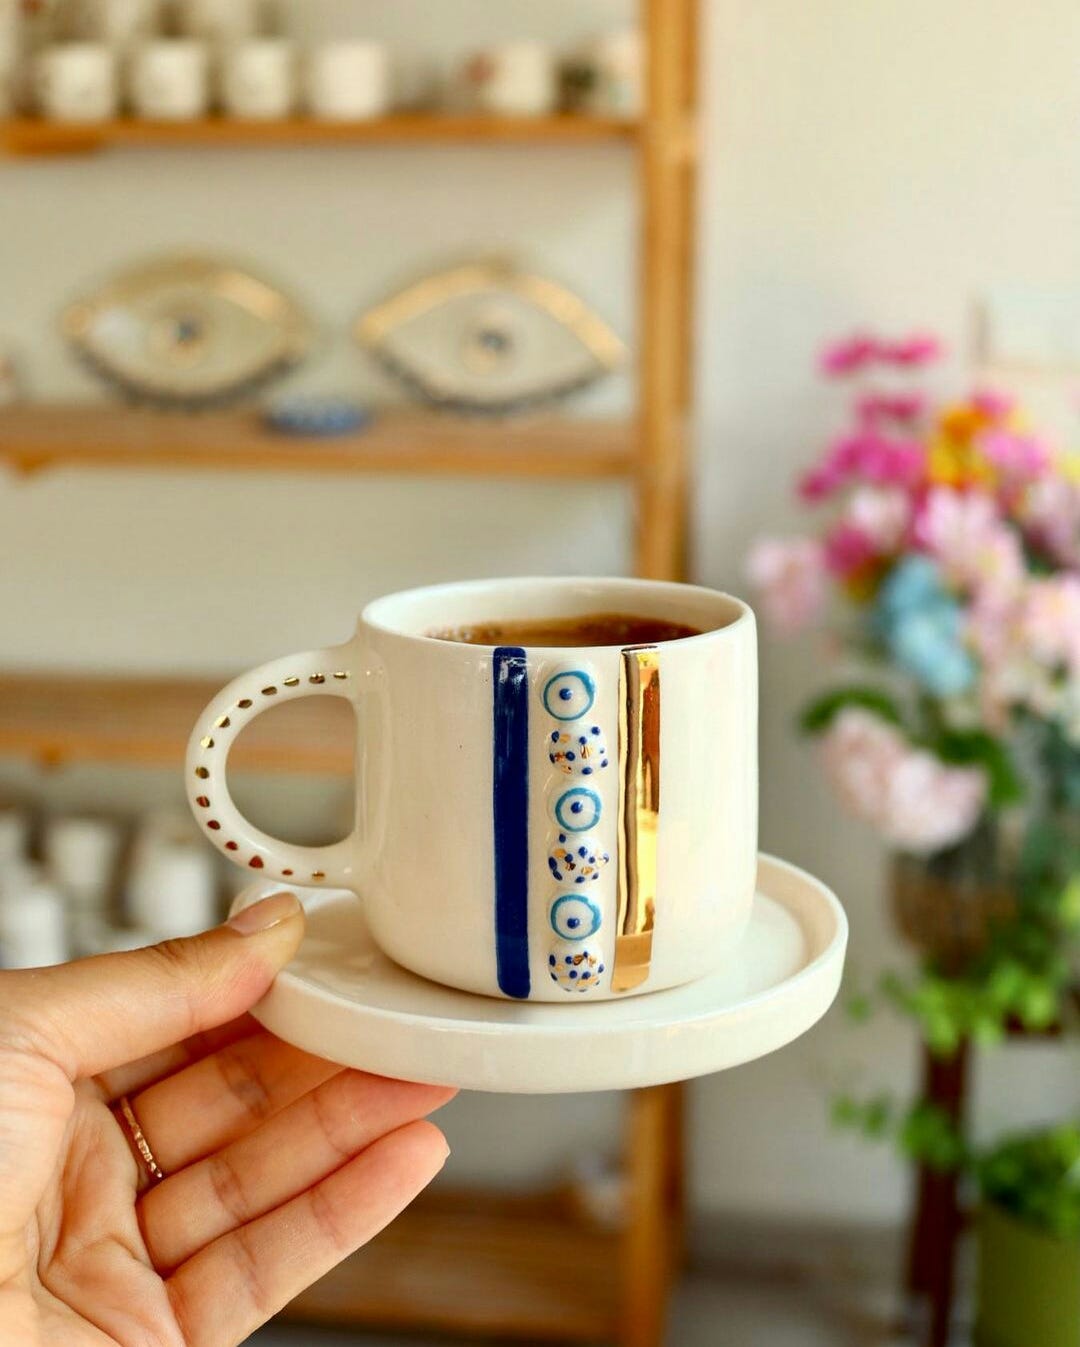 Handmade Floral Espresso Cup & Saucer Set - Ceramic Flower Coffee Mug –  Enjoy Ceramic Art